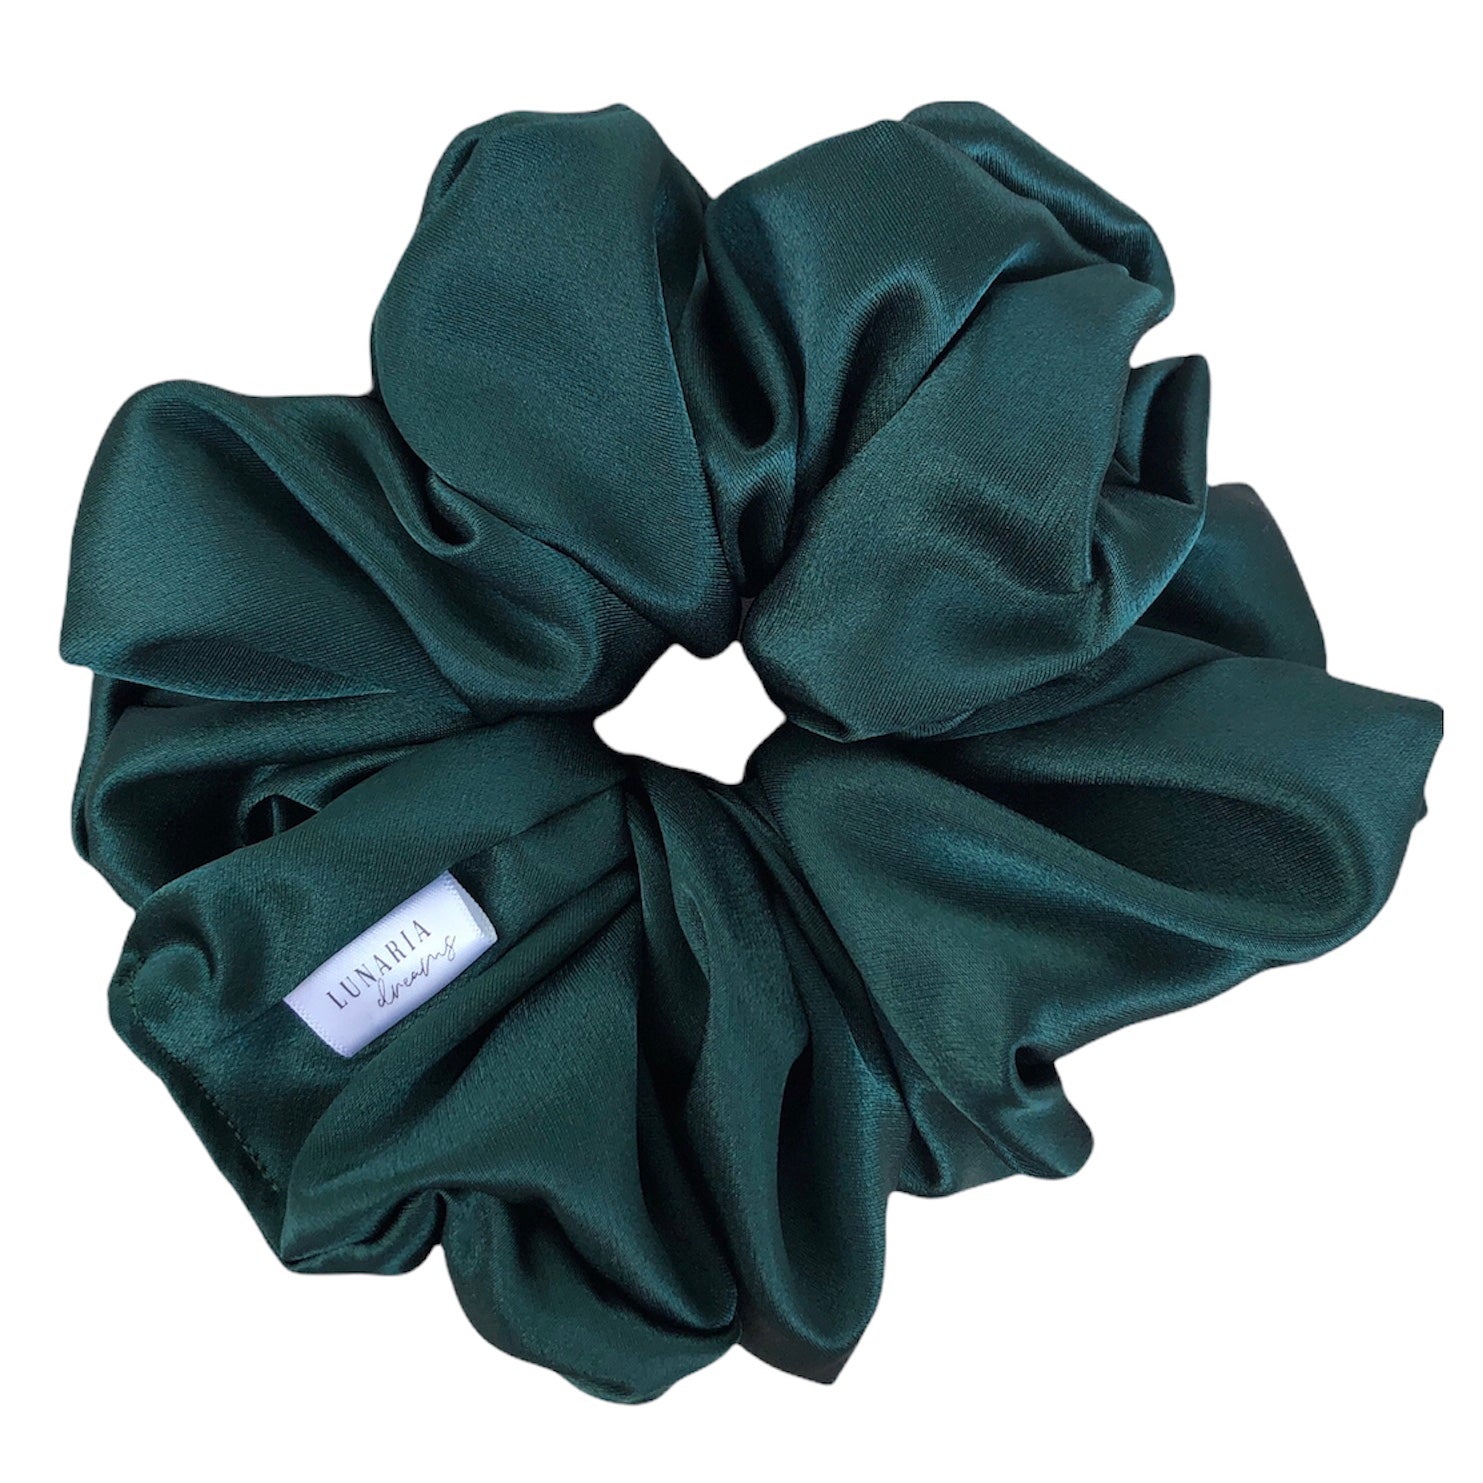 Oversized Aspen Scrunchie. An XL, extra luxe dark forest green satin scrunchie.